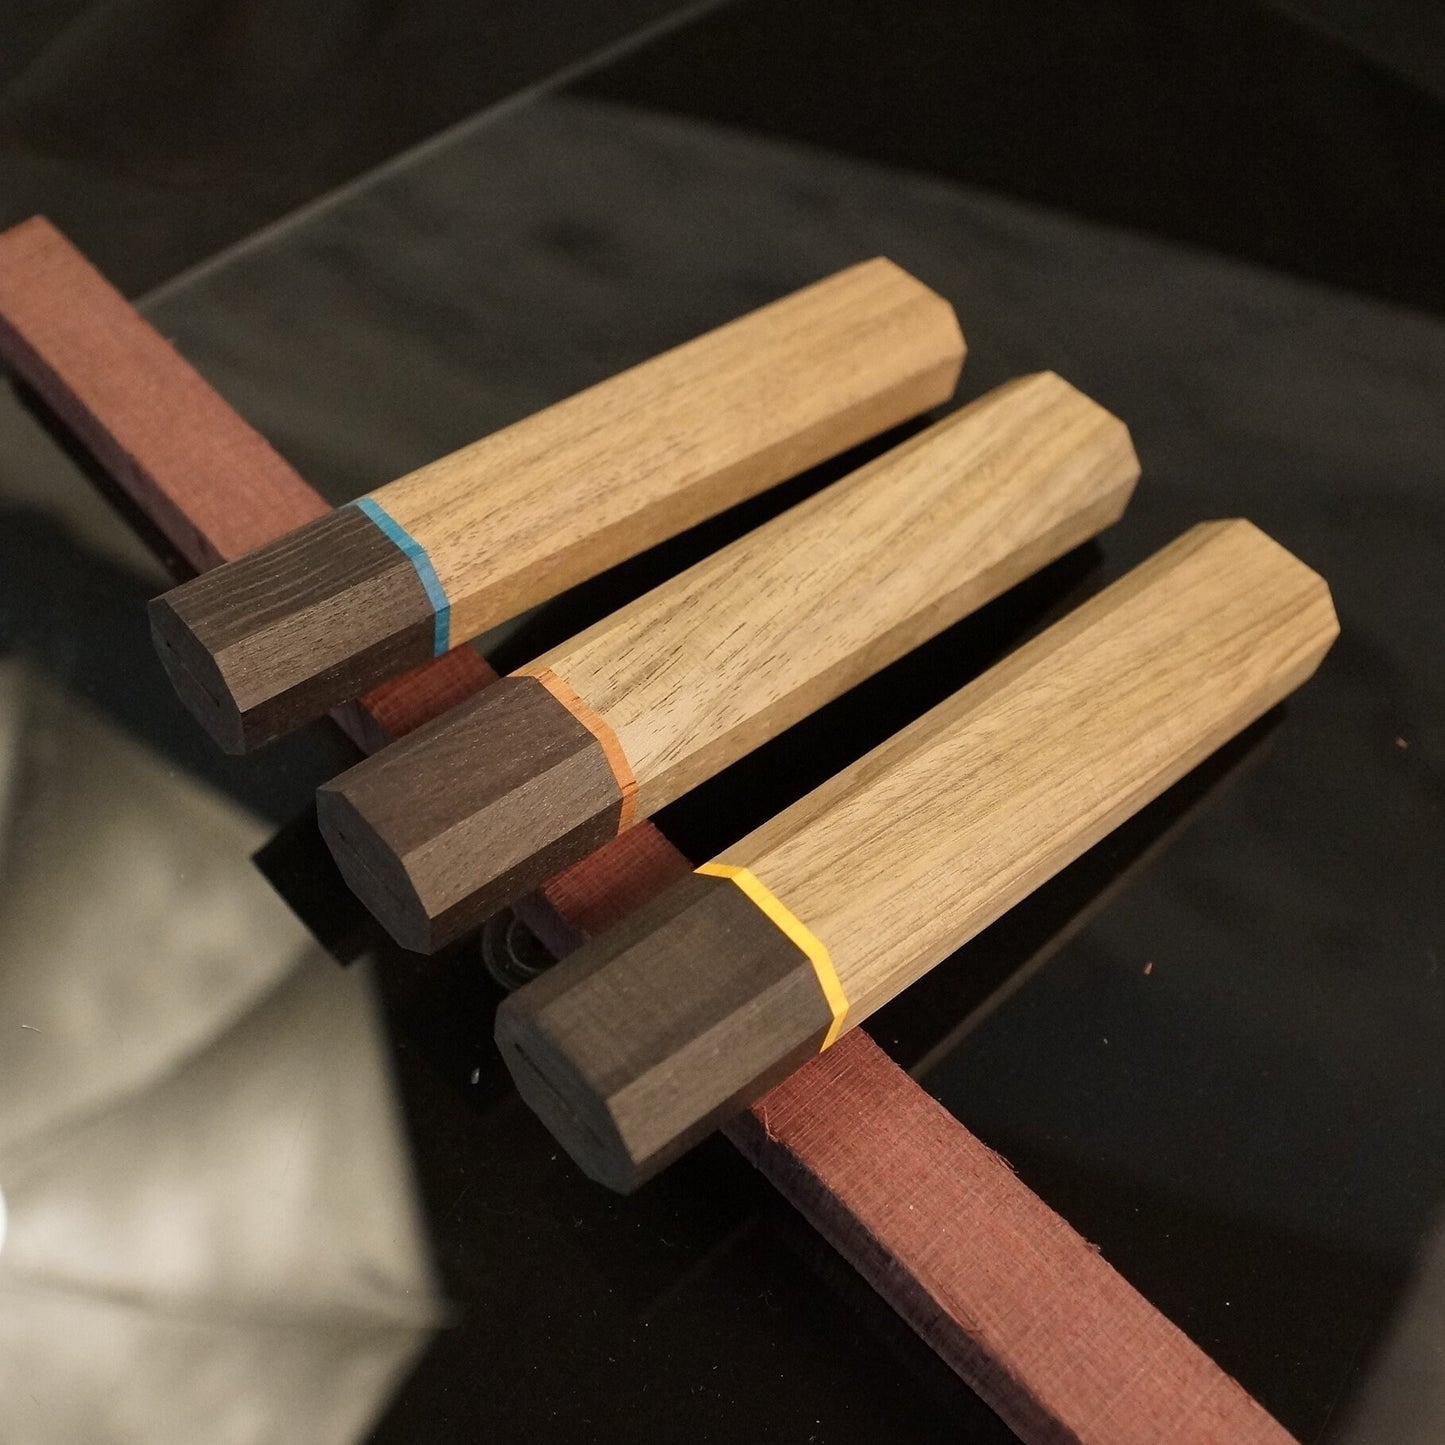 Wa-Griffrohling für Küchenmesser, japanischer Stil, exotisches Holz, aus US-Lagerbestand.